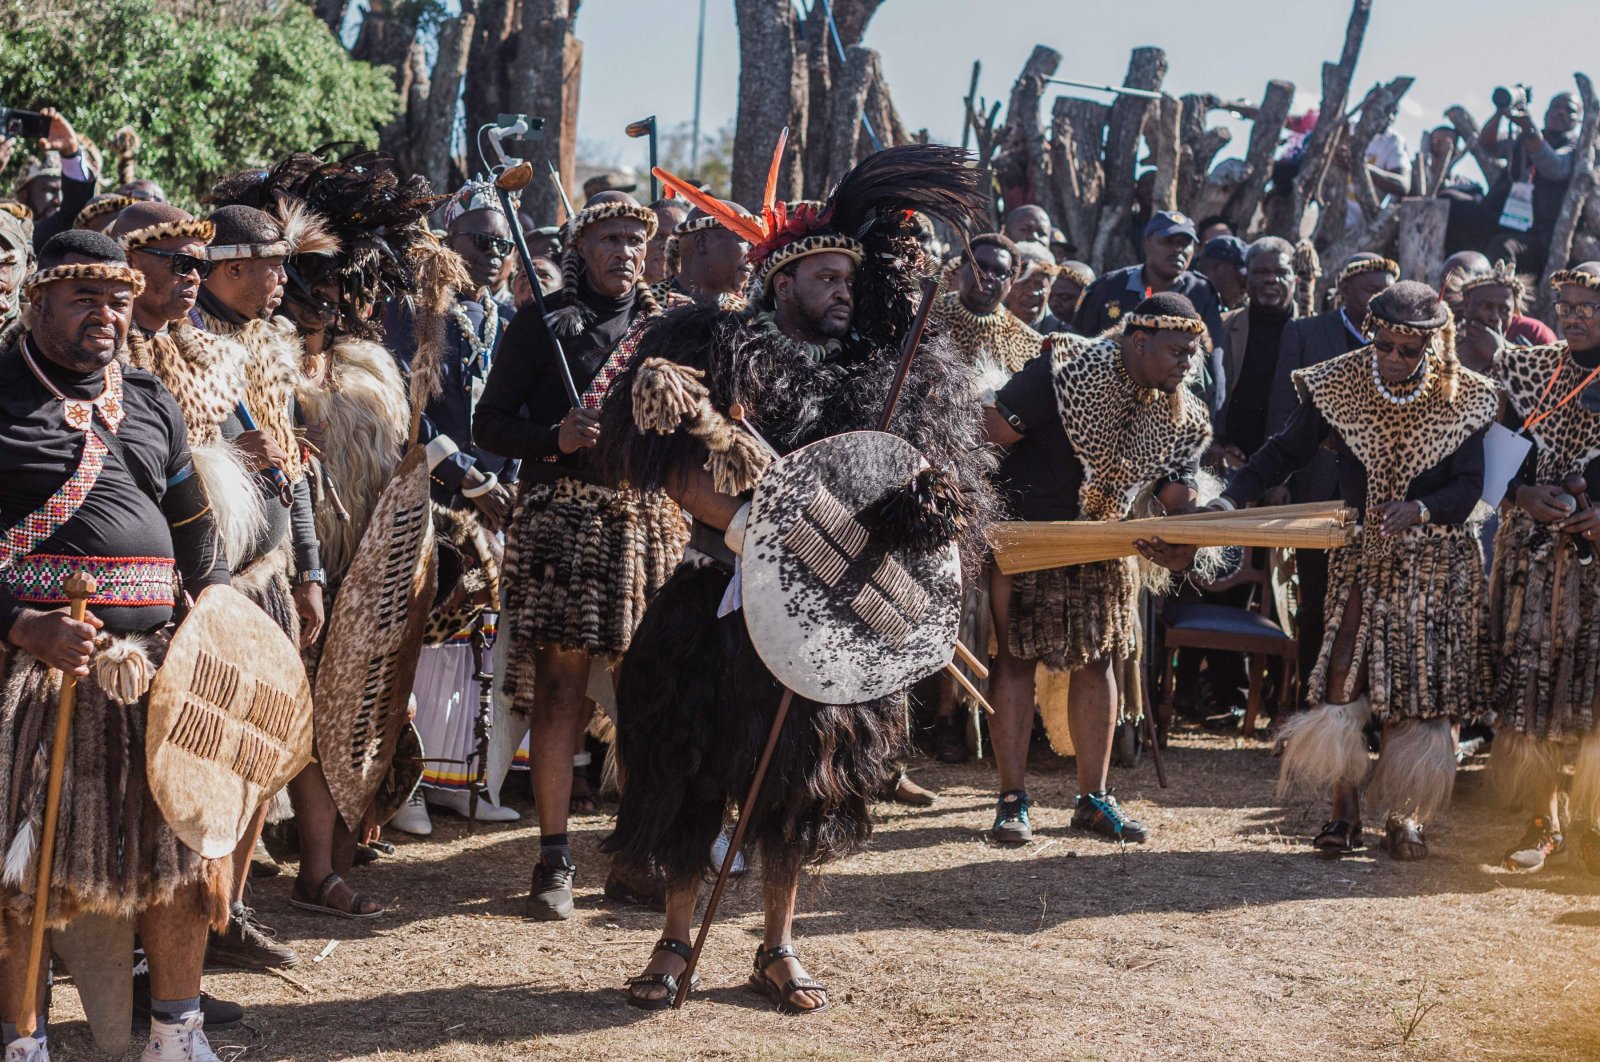 Afrika Selatan memahkotai raja Zulu yang baru saat ribuan orang berkumpul untuk merayakannya